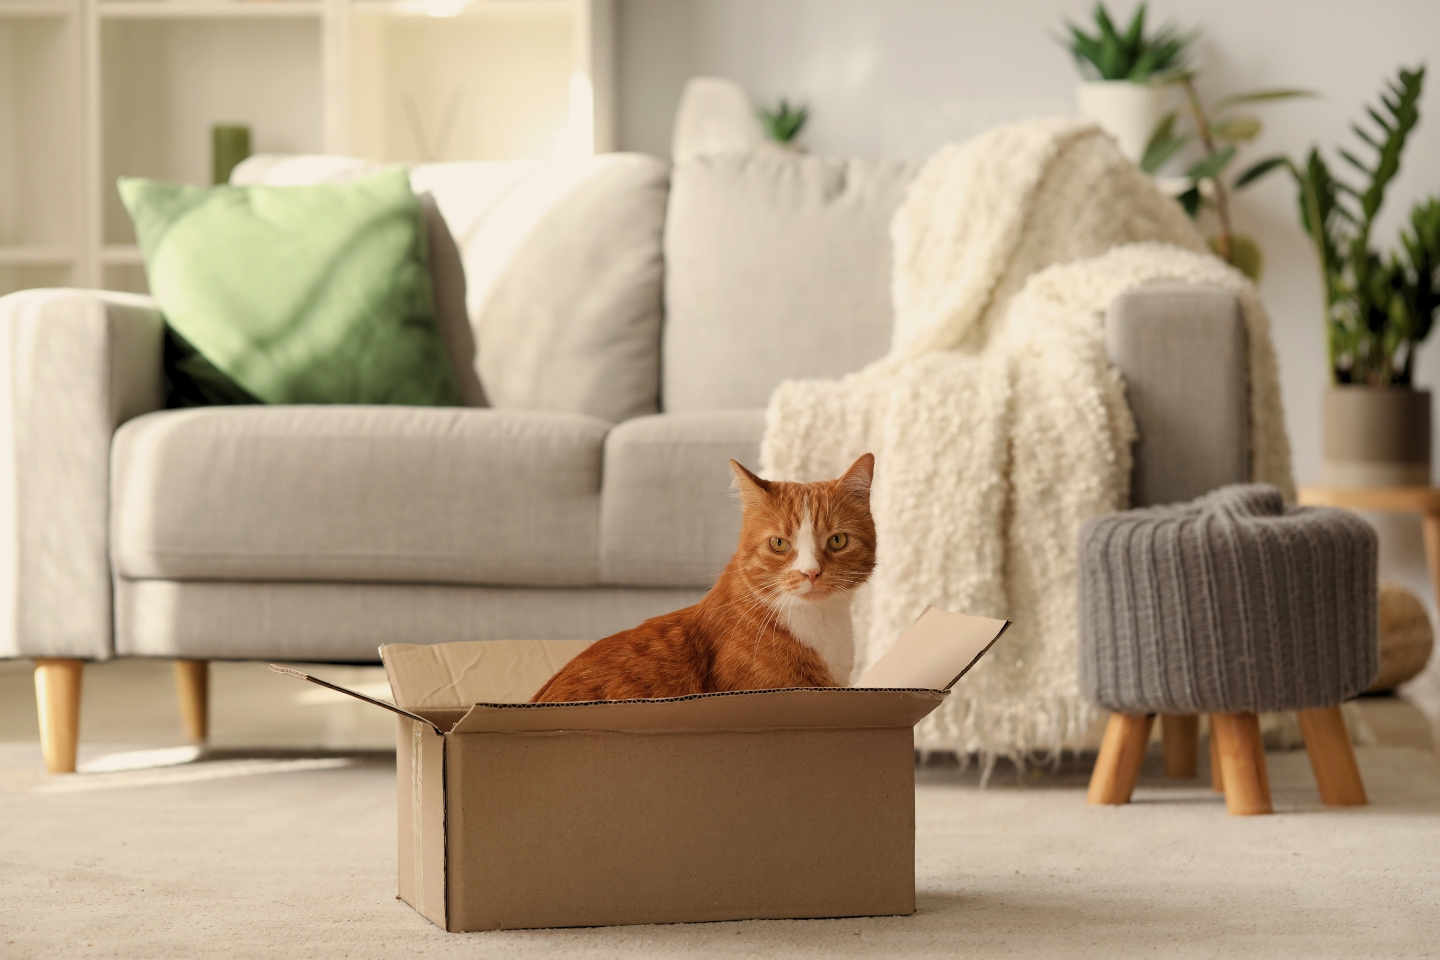 un chat assis dans une boîte en carton au milieu d'un salon fixe l'objectif. canapé et coussins en arrière plan.